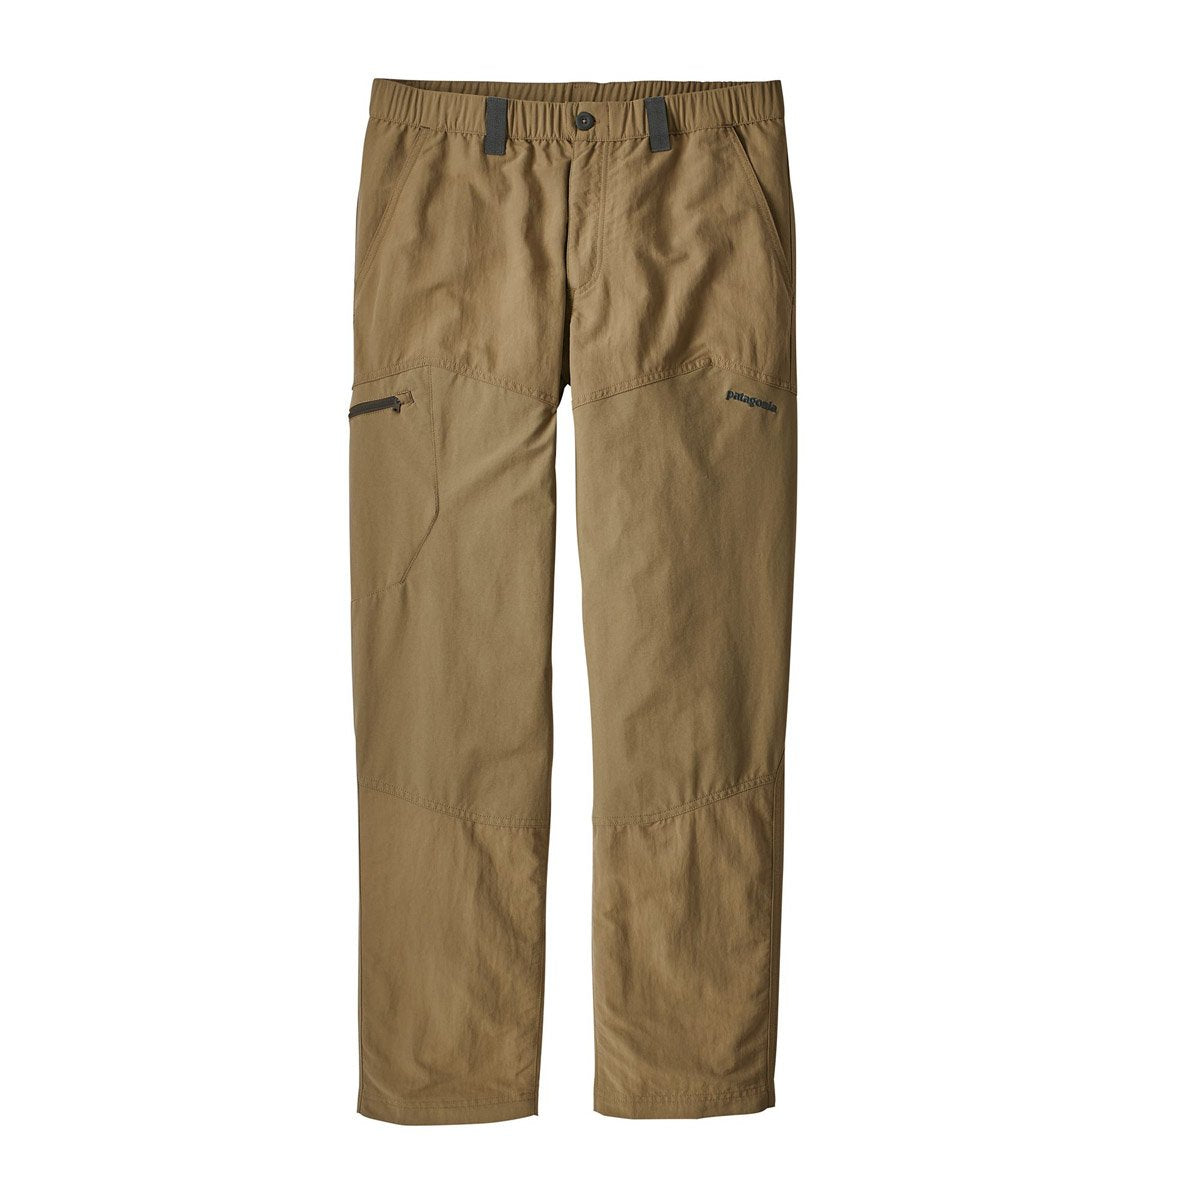 Men's Guidewater II Pants - Short Length